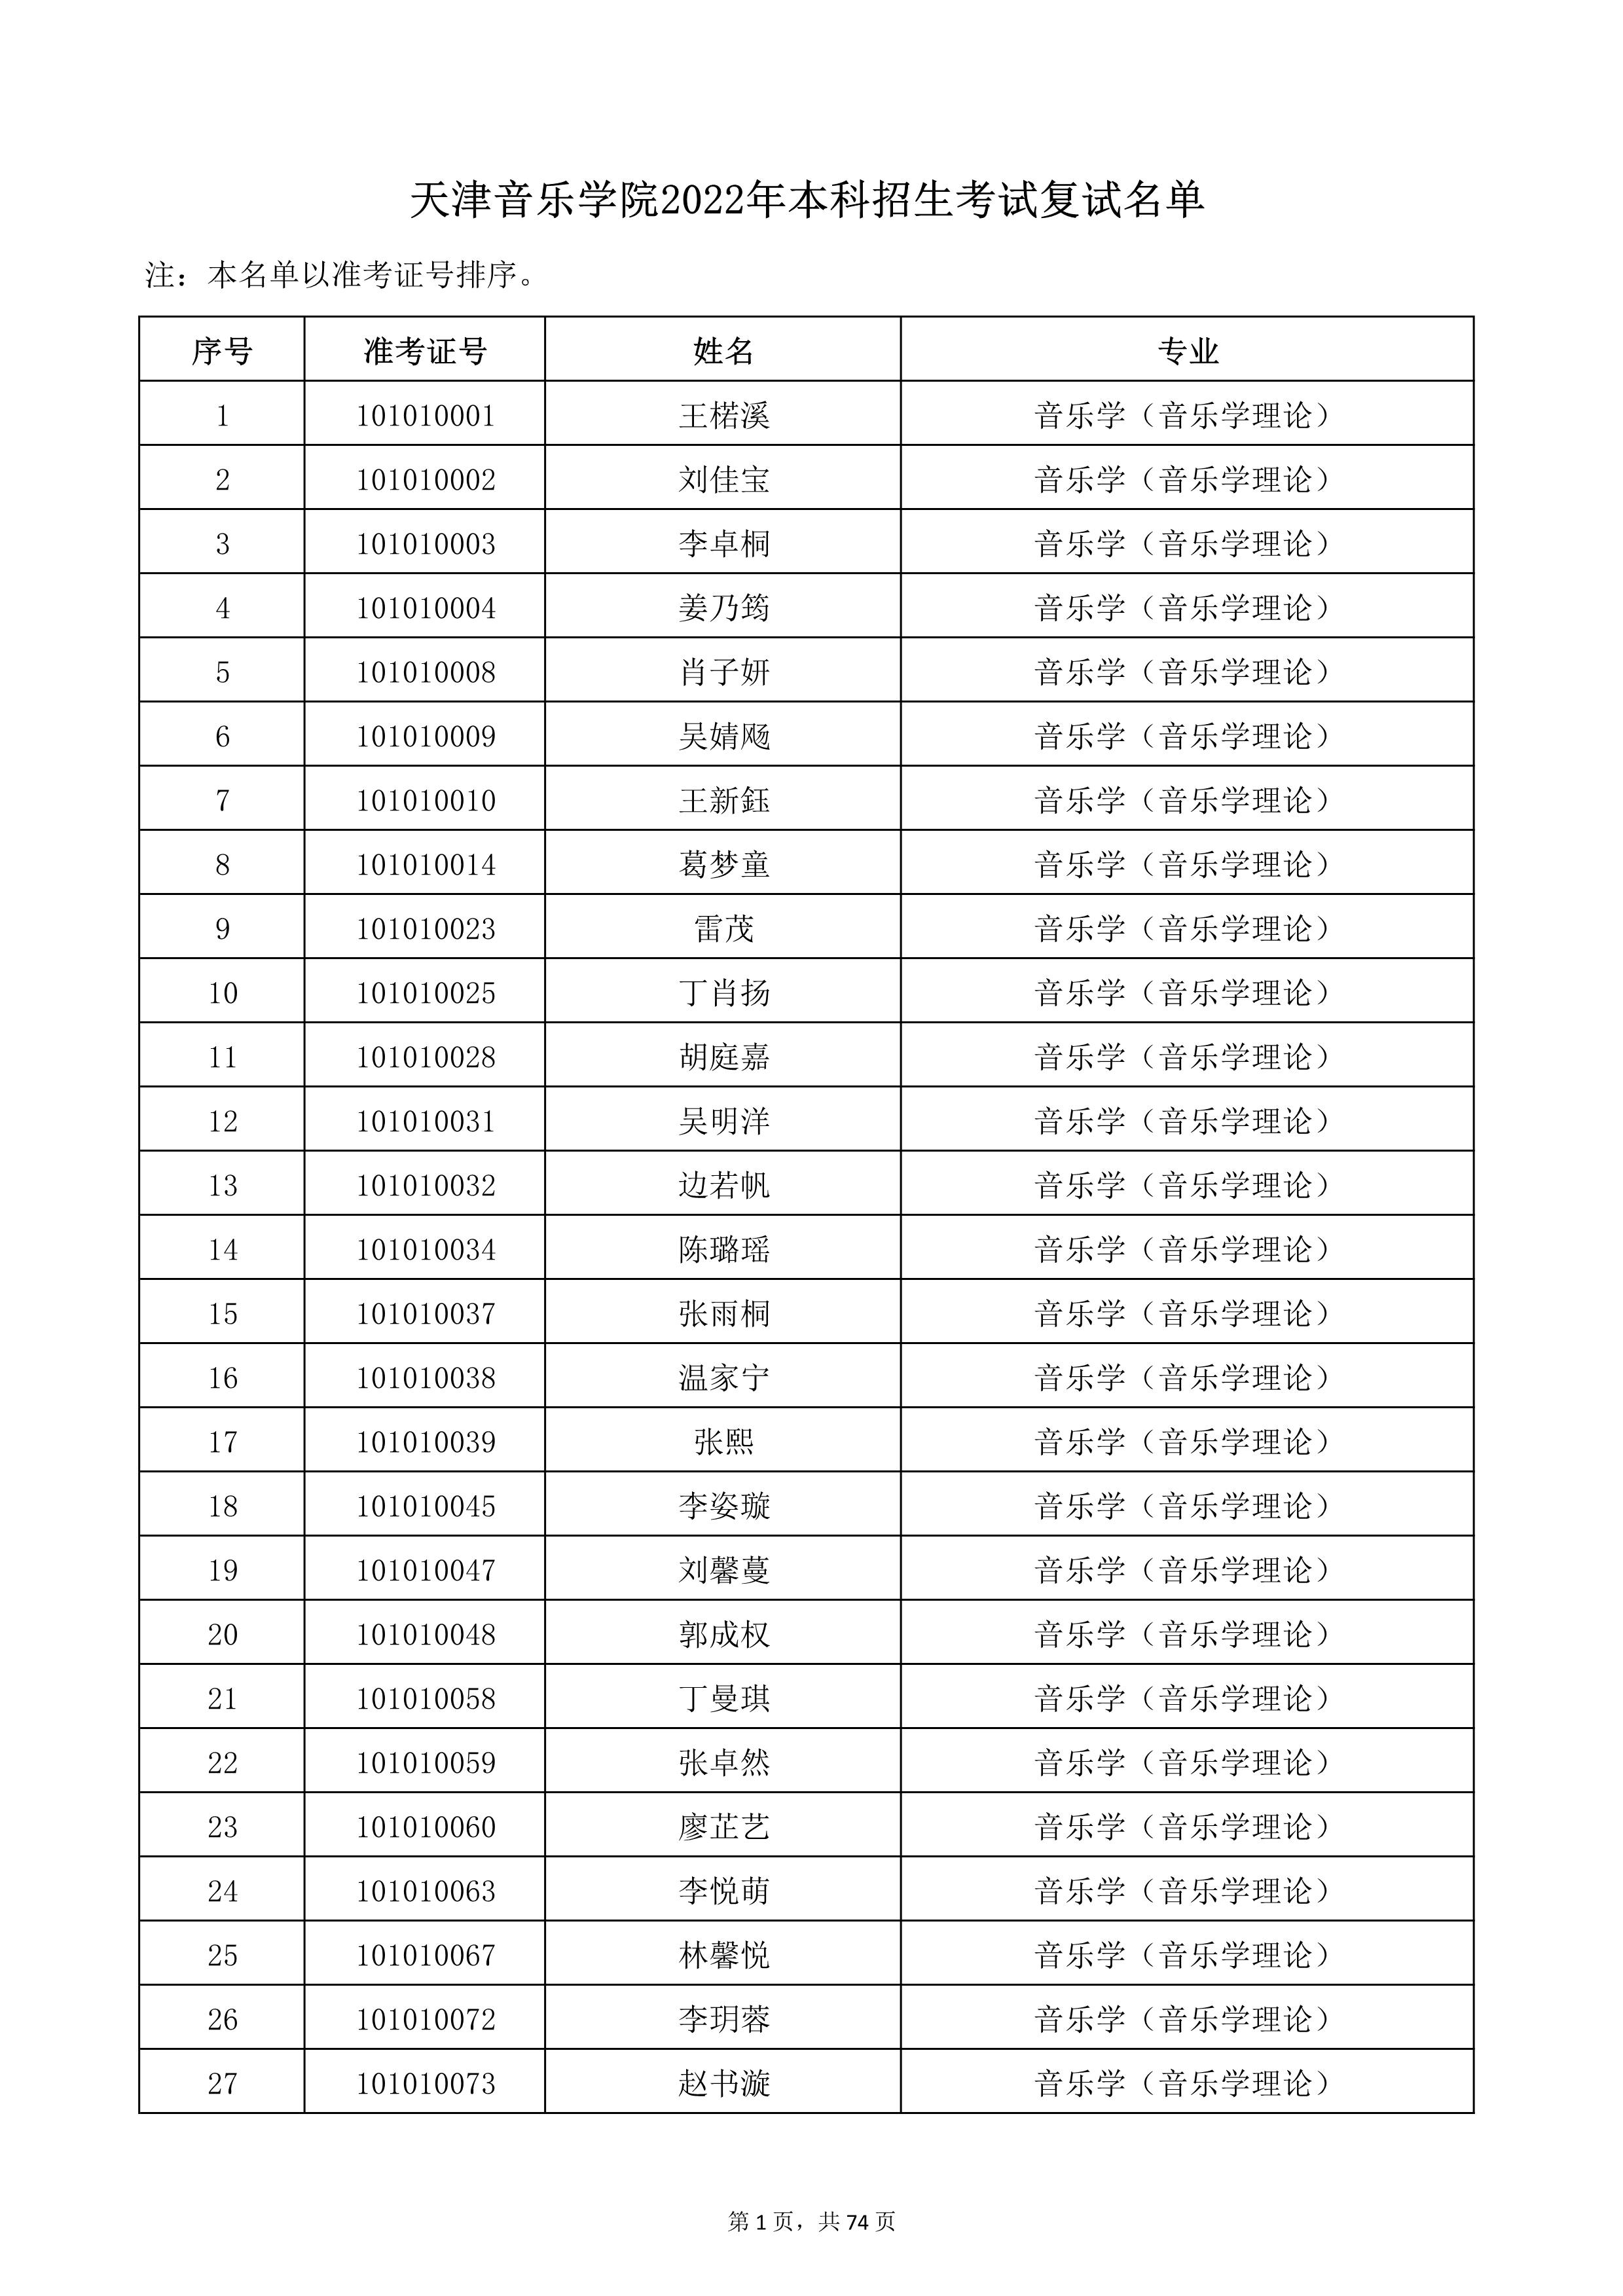 天津音乐学院2022年本科招生考试复试名单_1.jpg